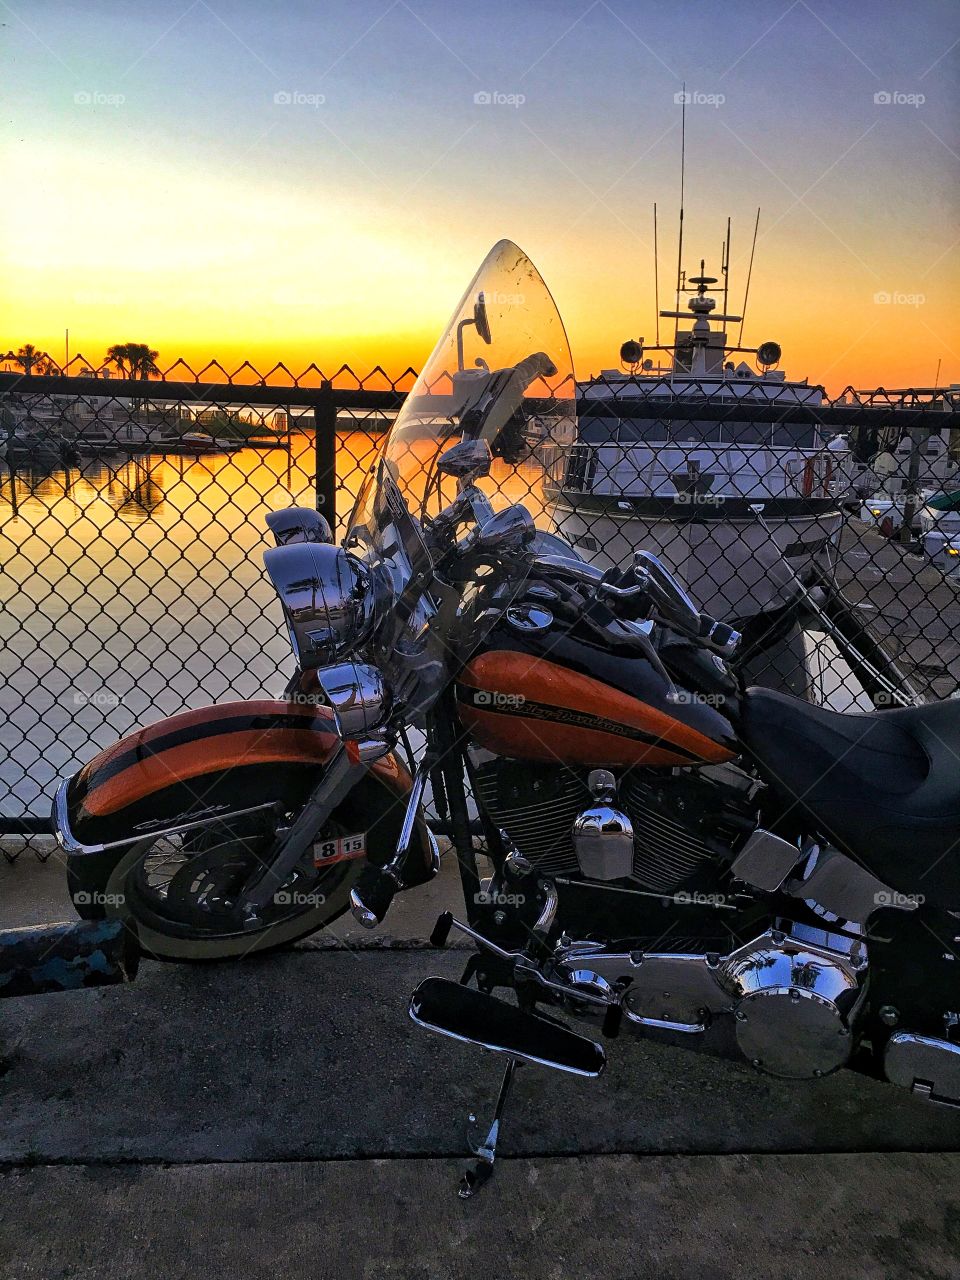 Harley Davidson sunrise